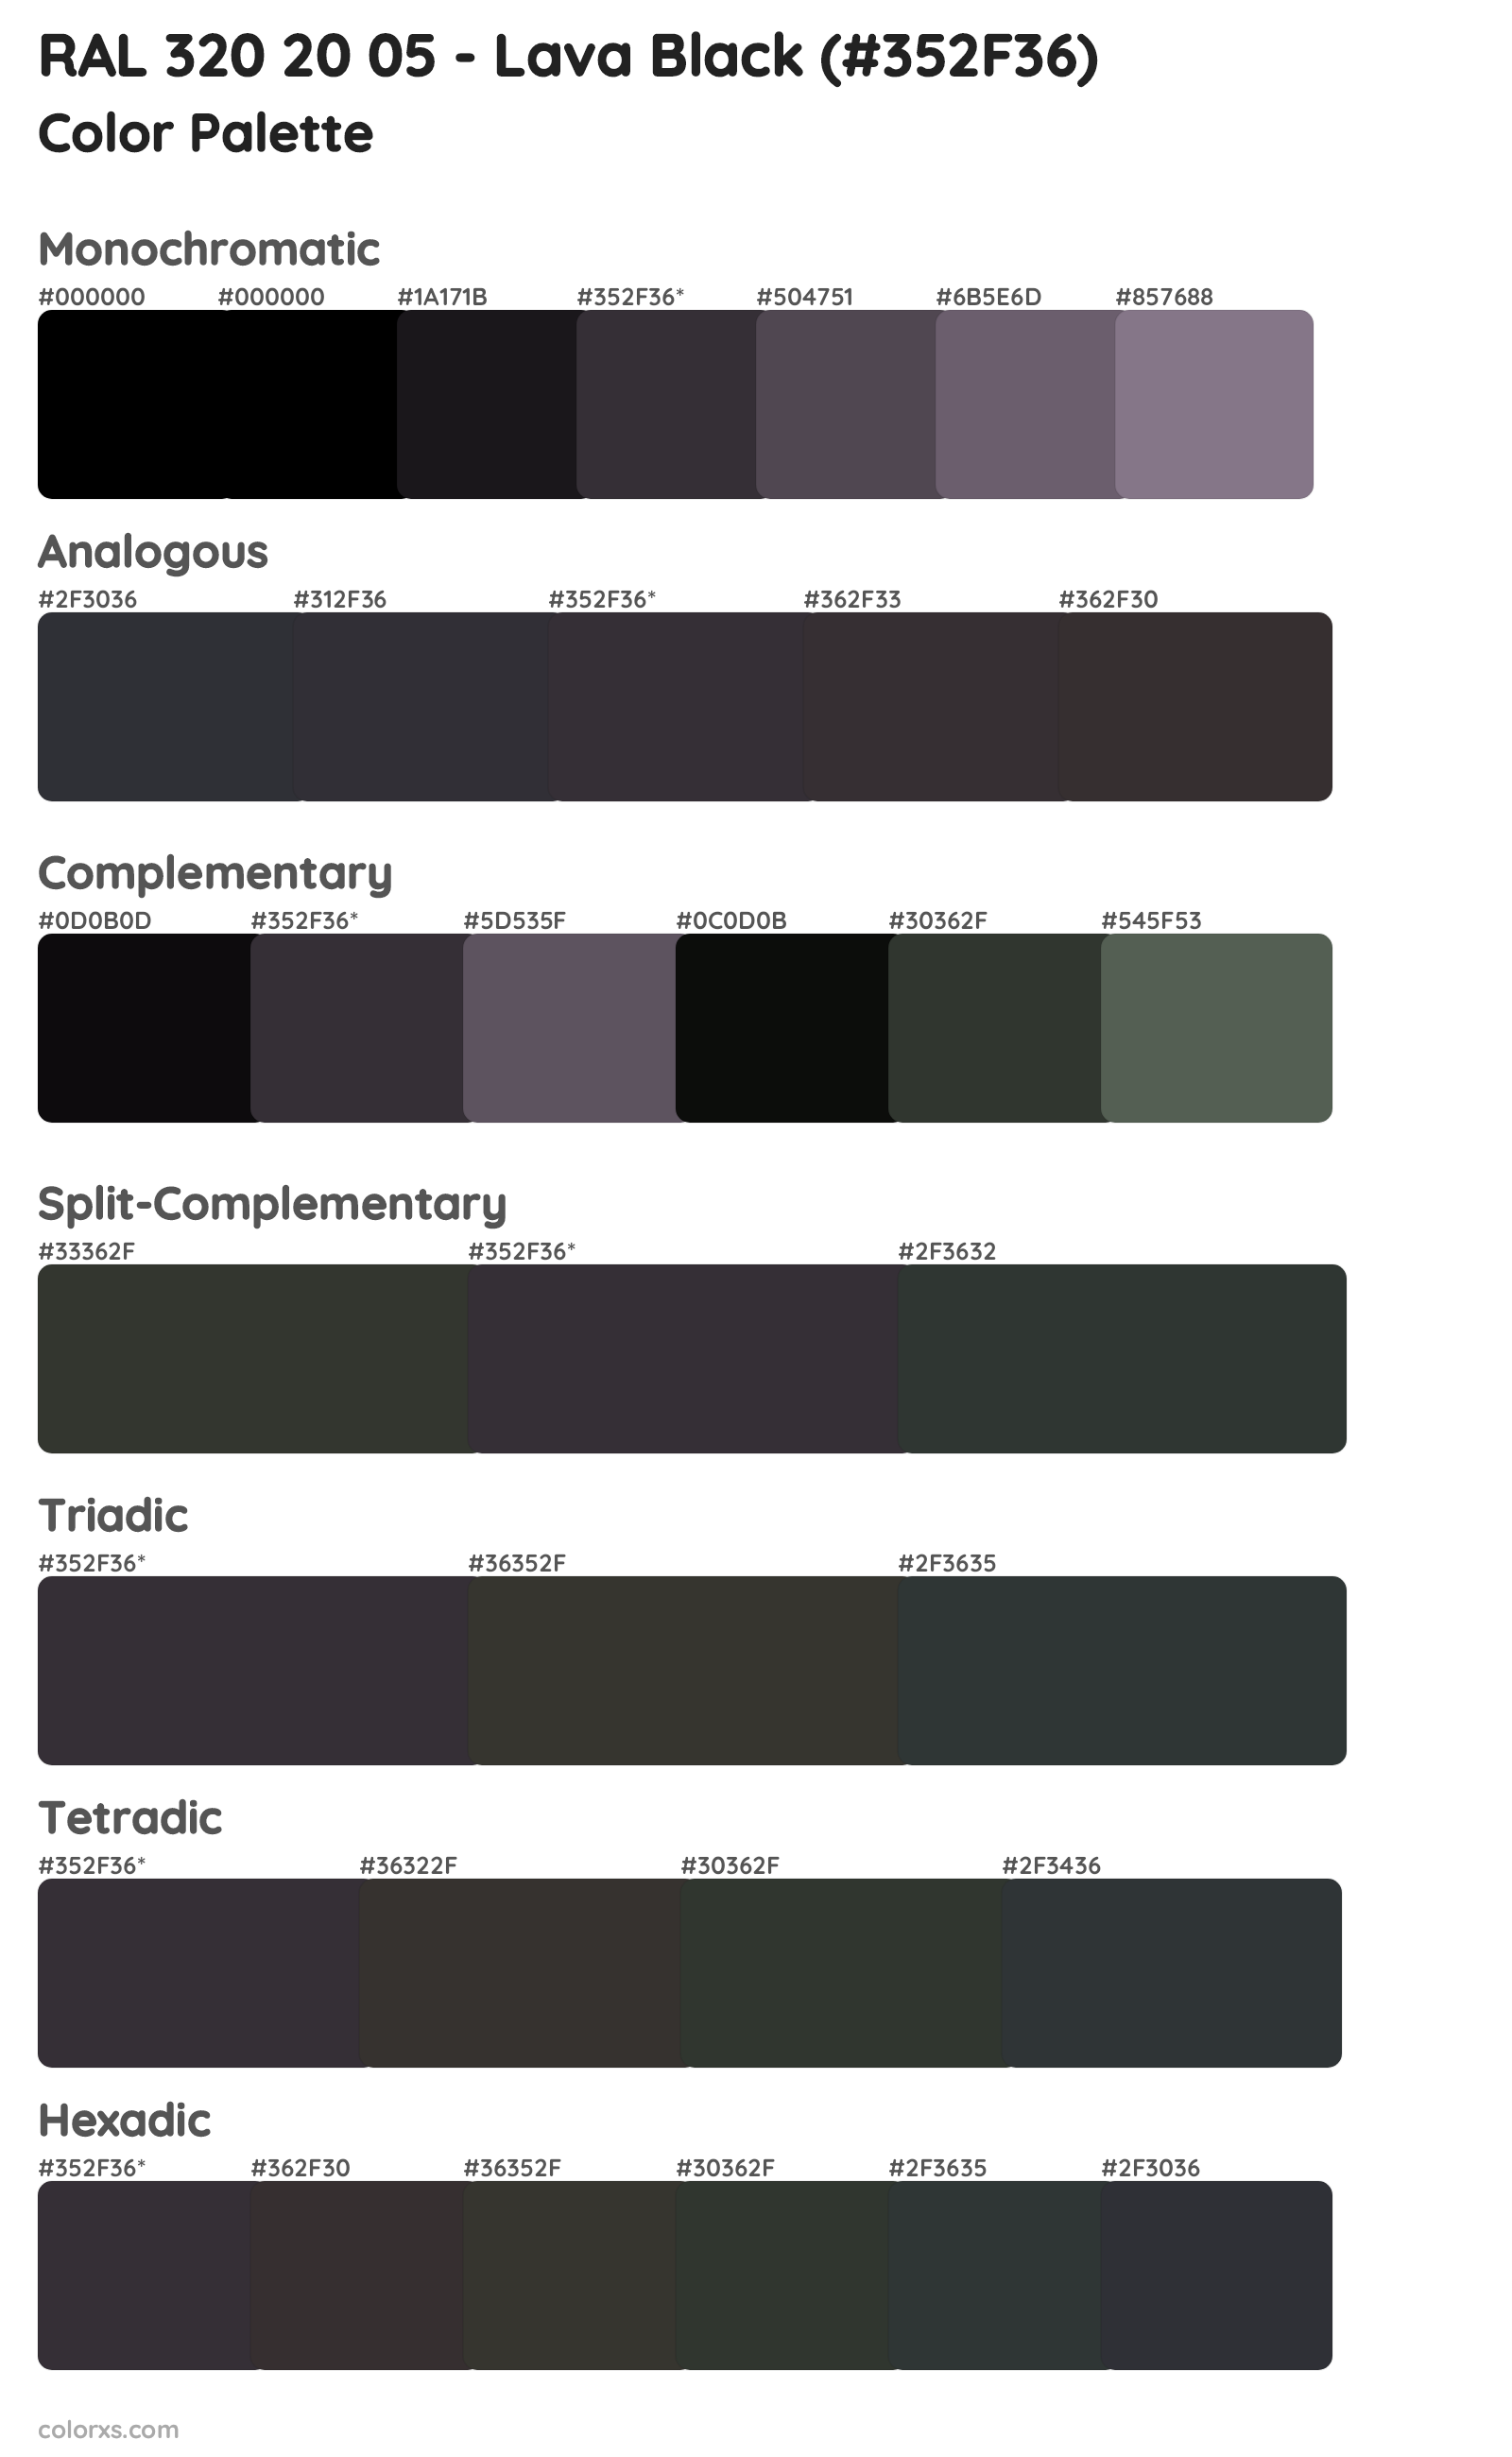 RAL 320 20 05 - Lava Black Color Scheme Palettes